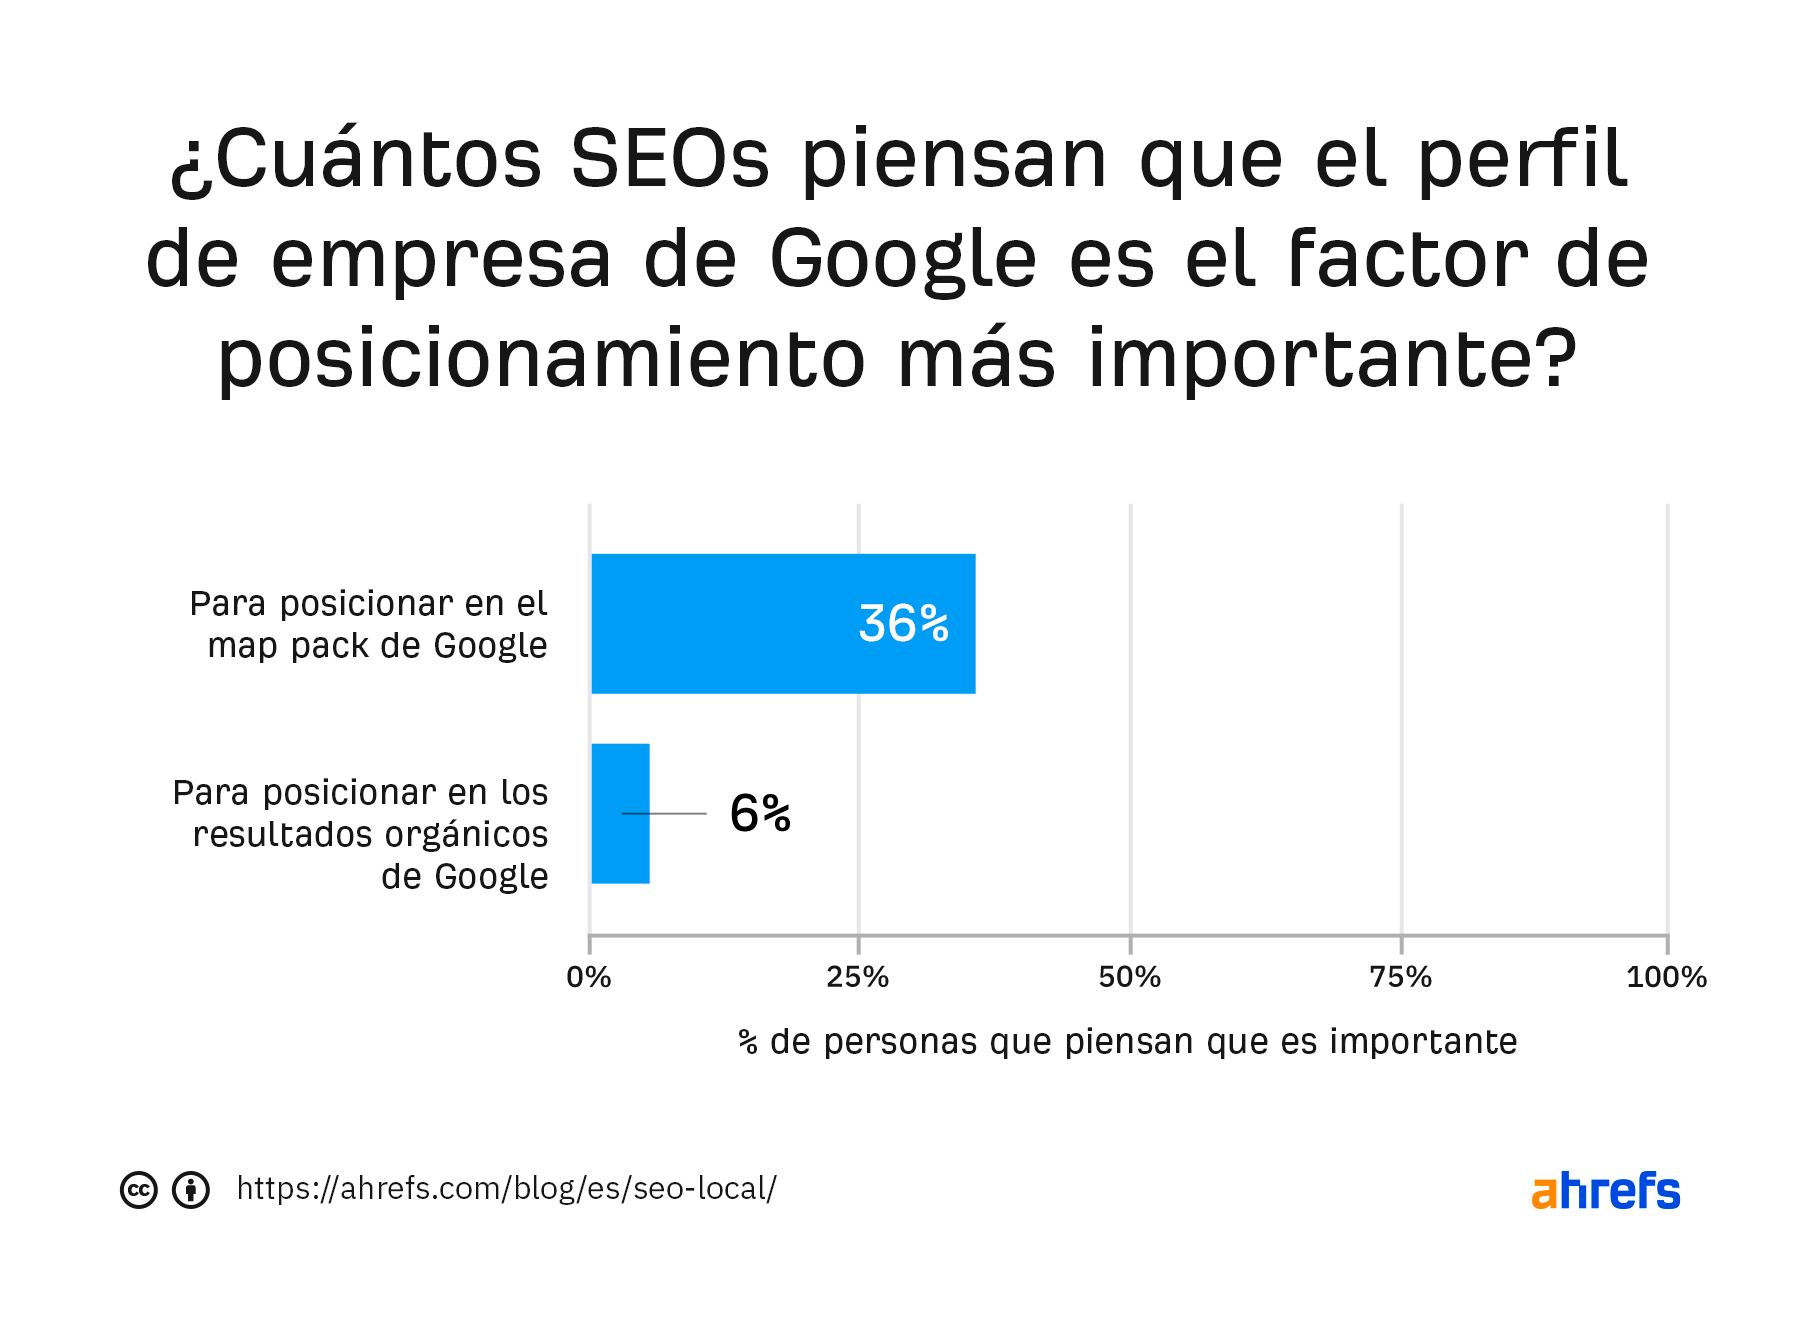 Resultados de la encuentra de BrightLocal: el 36% piensa que el Perfil de Empresa de Google es el factor de posicionamiento más importante para posicionar en el pack de mapas